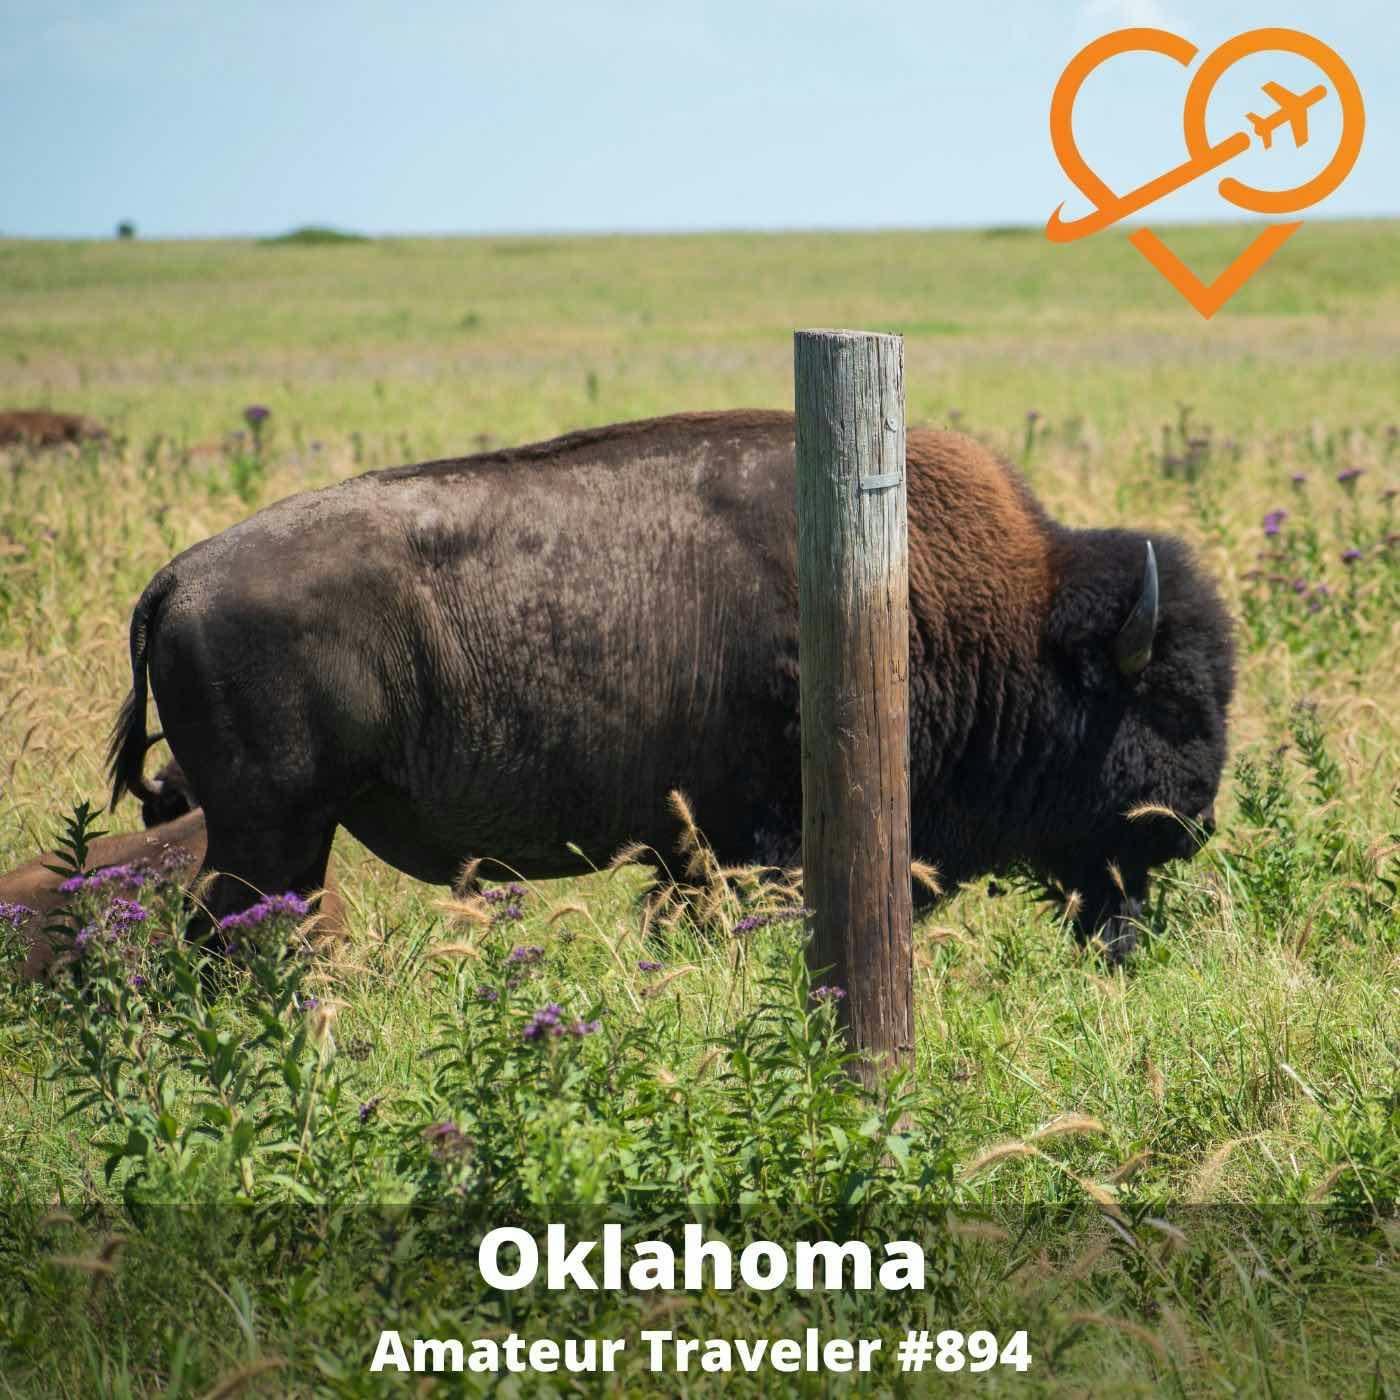 AT#894 - Travel to Oklahoma